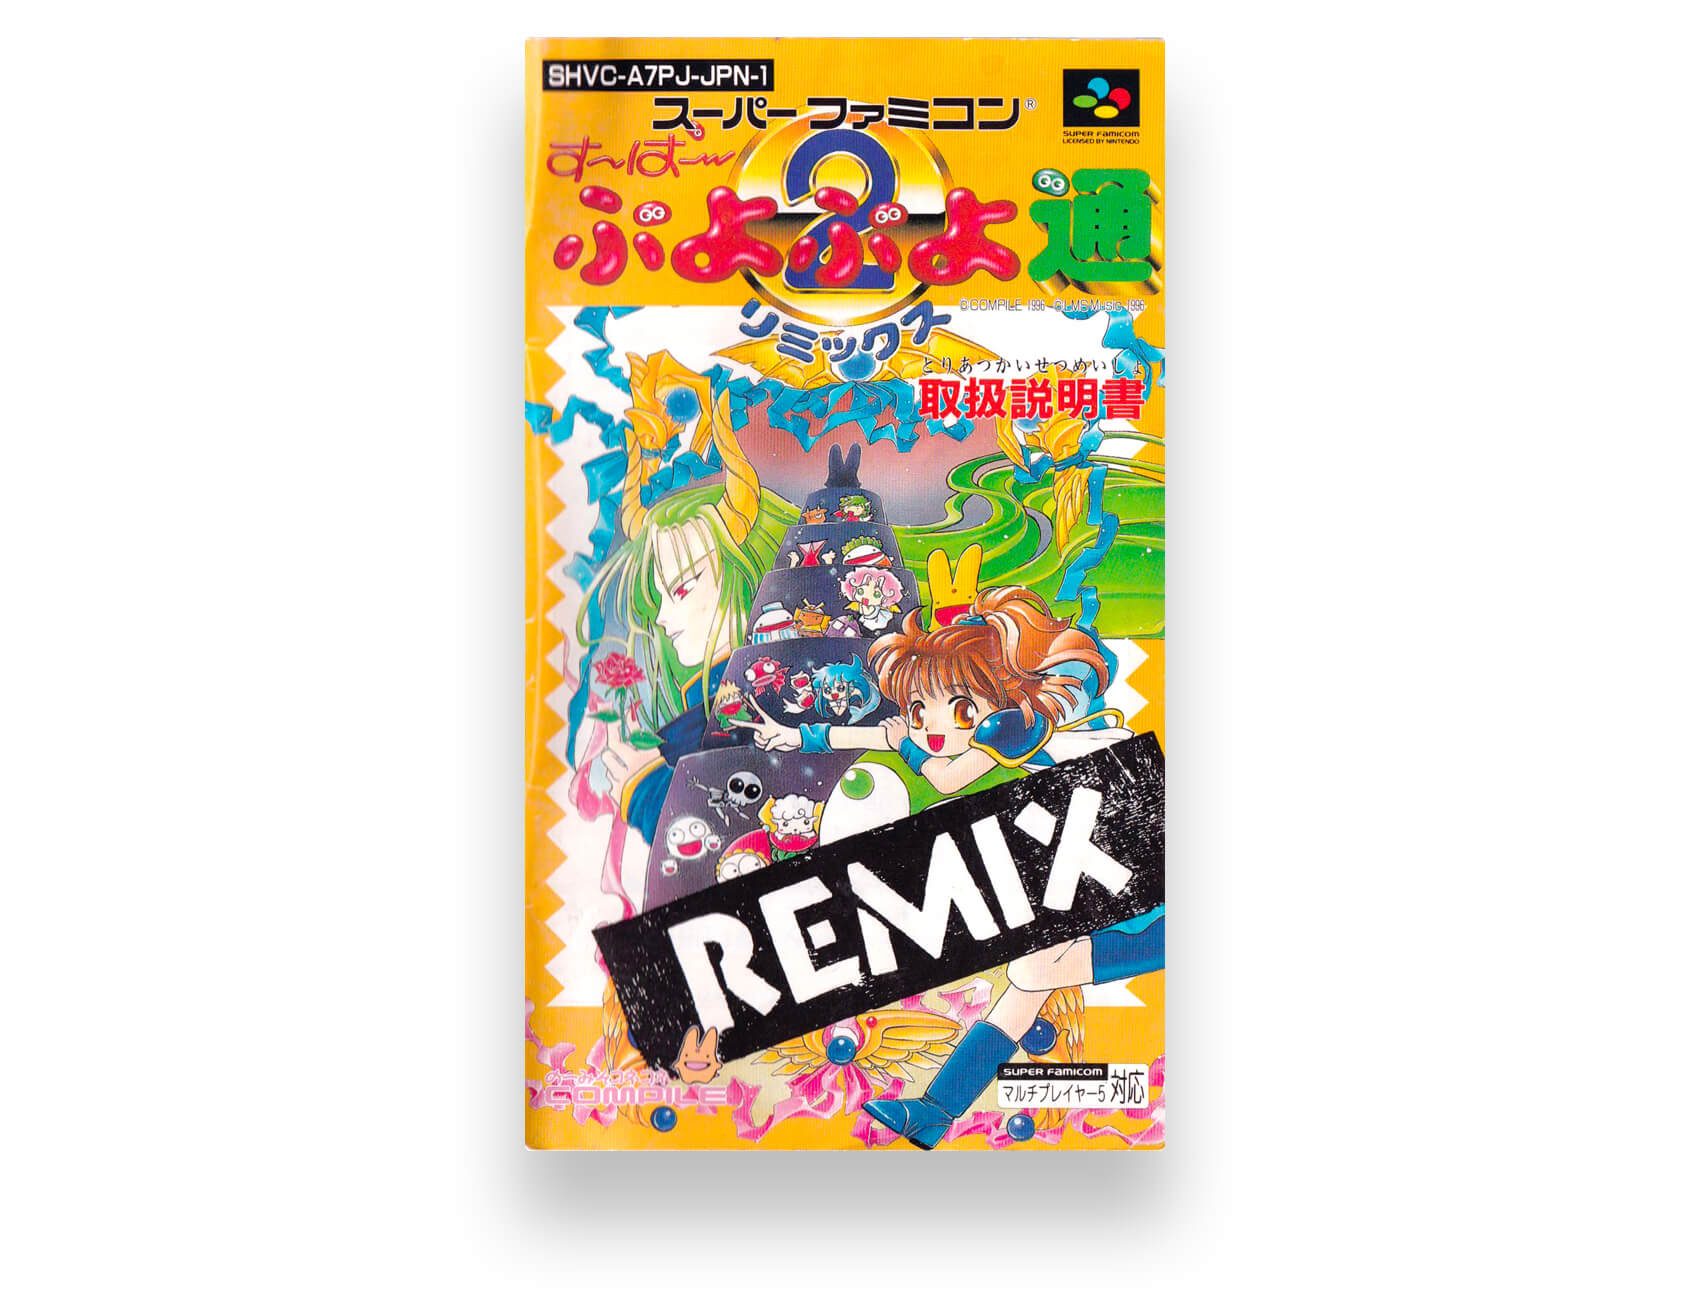 Super Puyo Puyo 2 Remix